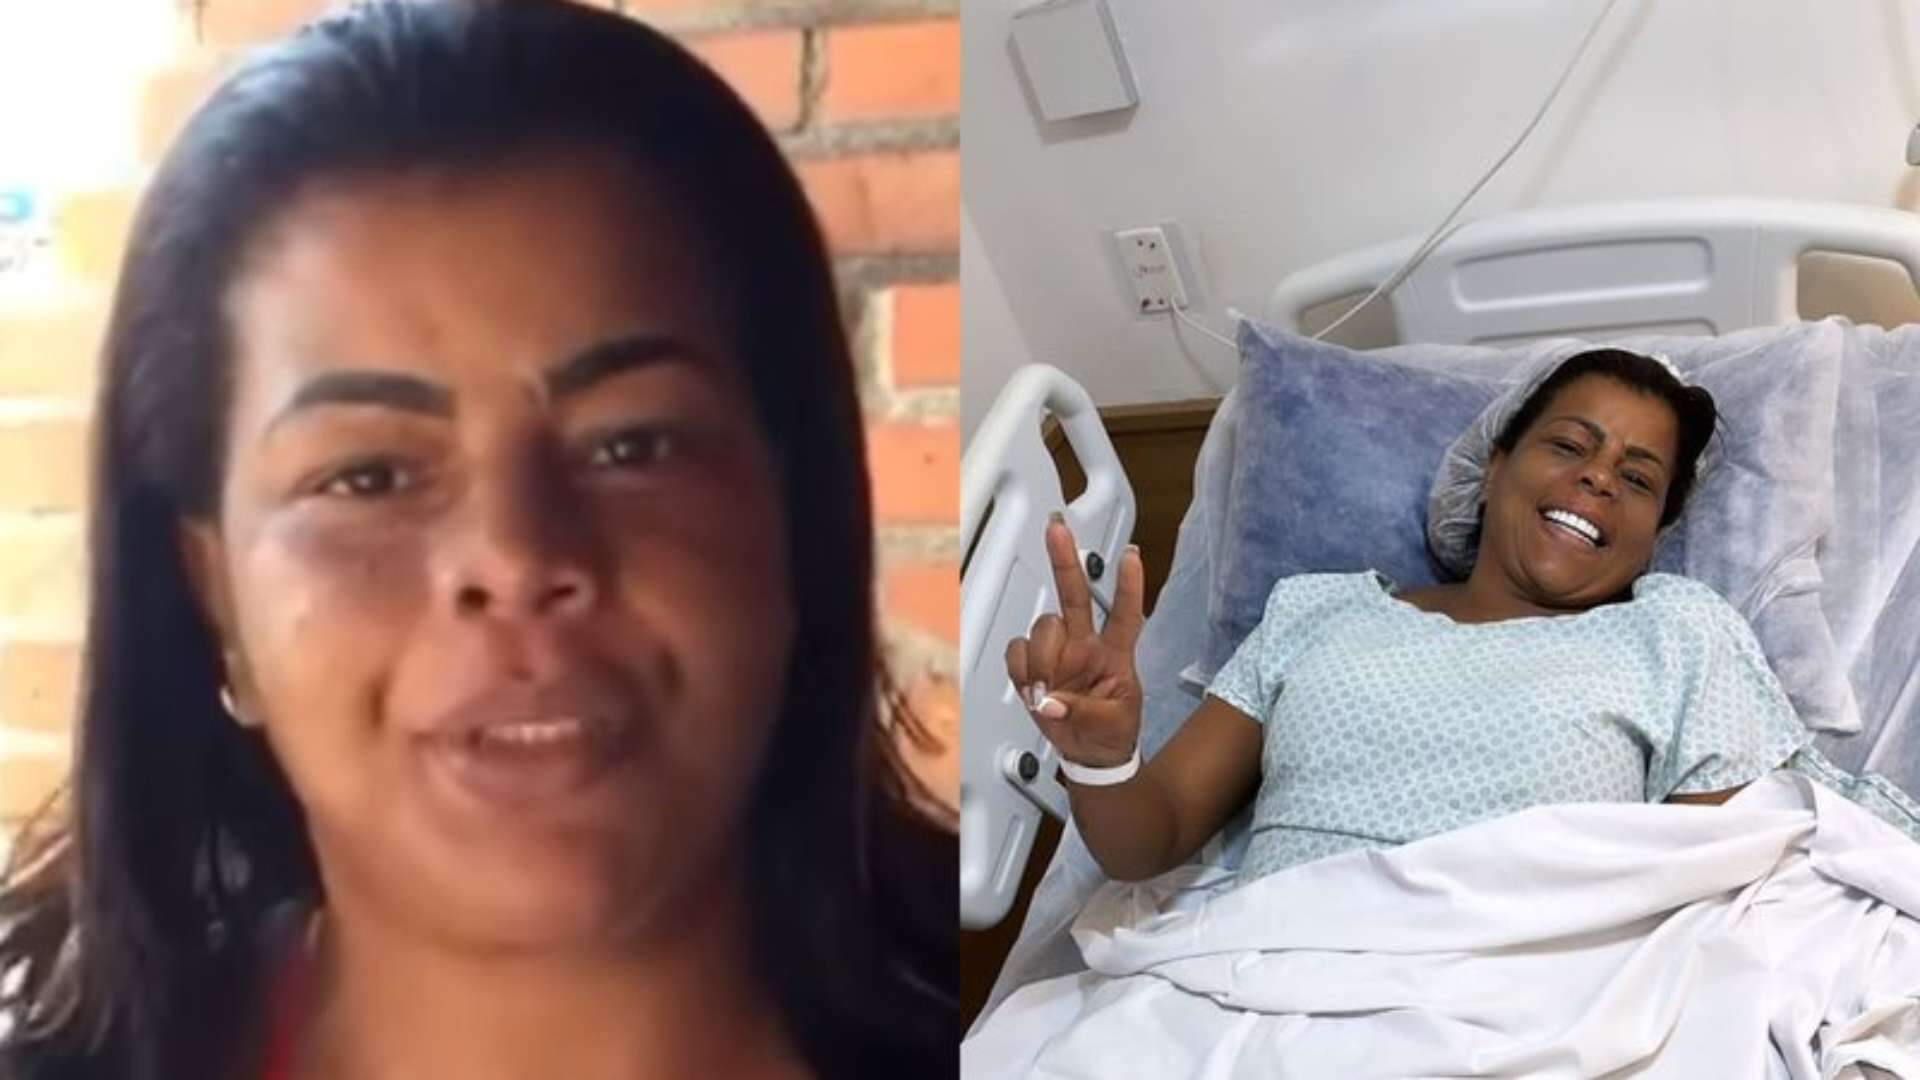 Tati Quebra Barraco realiza cirurgia ginecológica, preocupa os fãs e faz alerta na web: “Usem camisinha” - Metropolitana FM